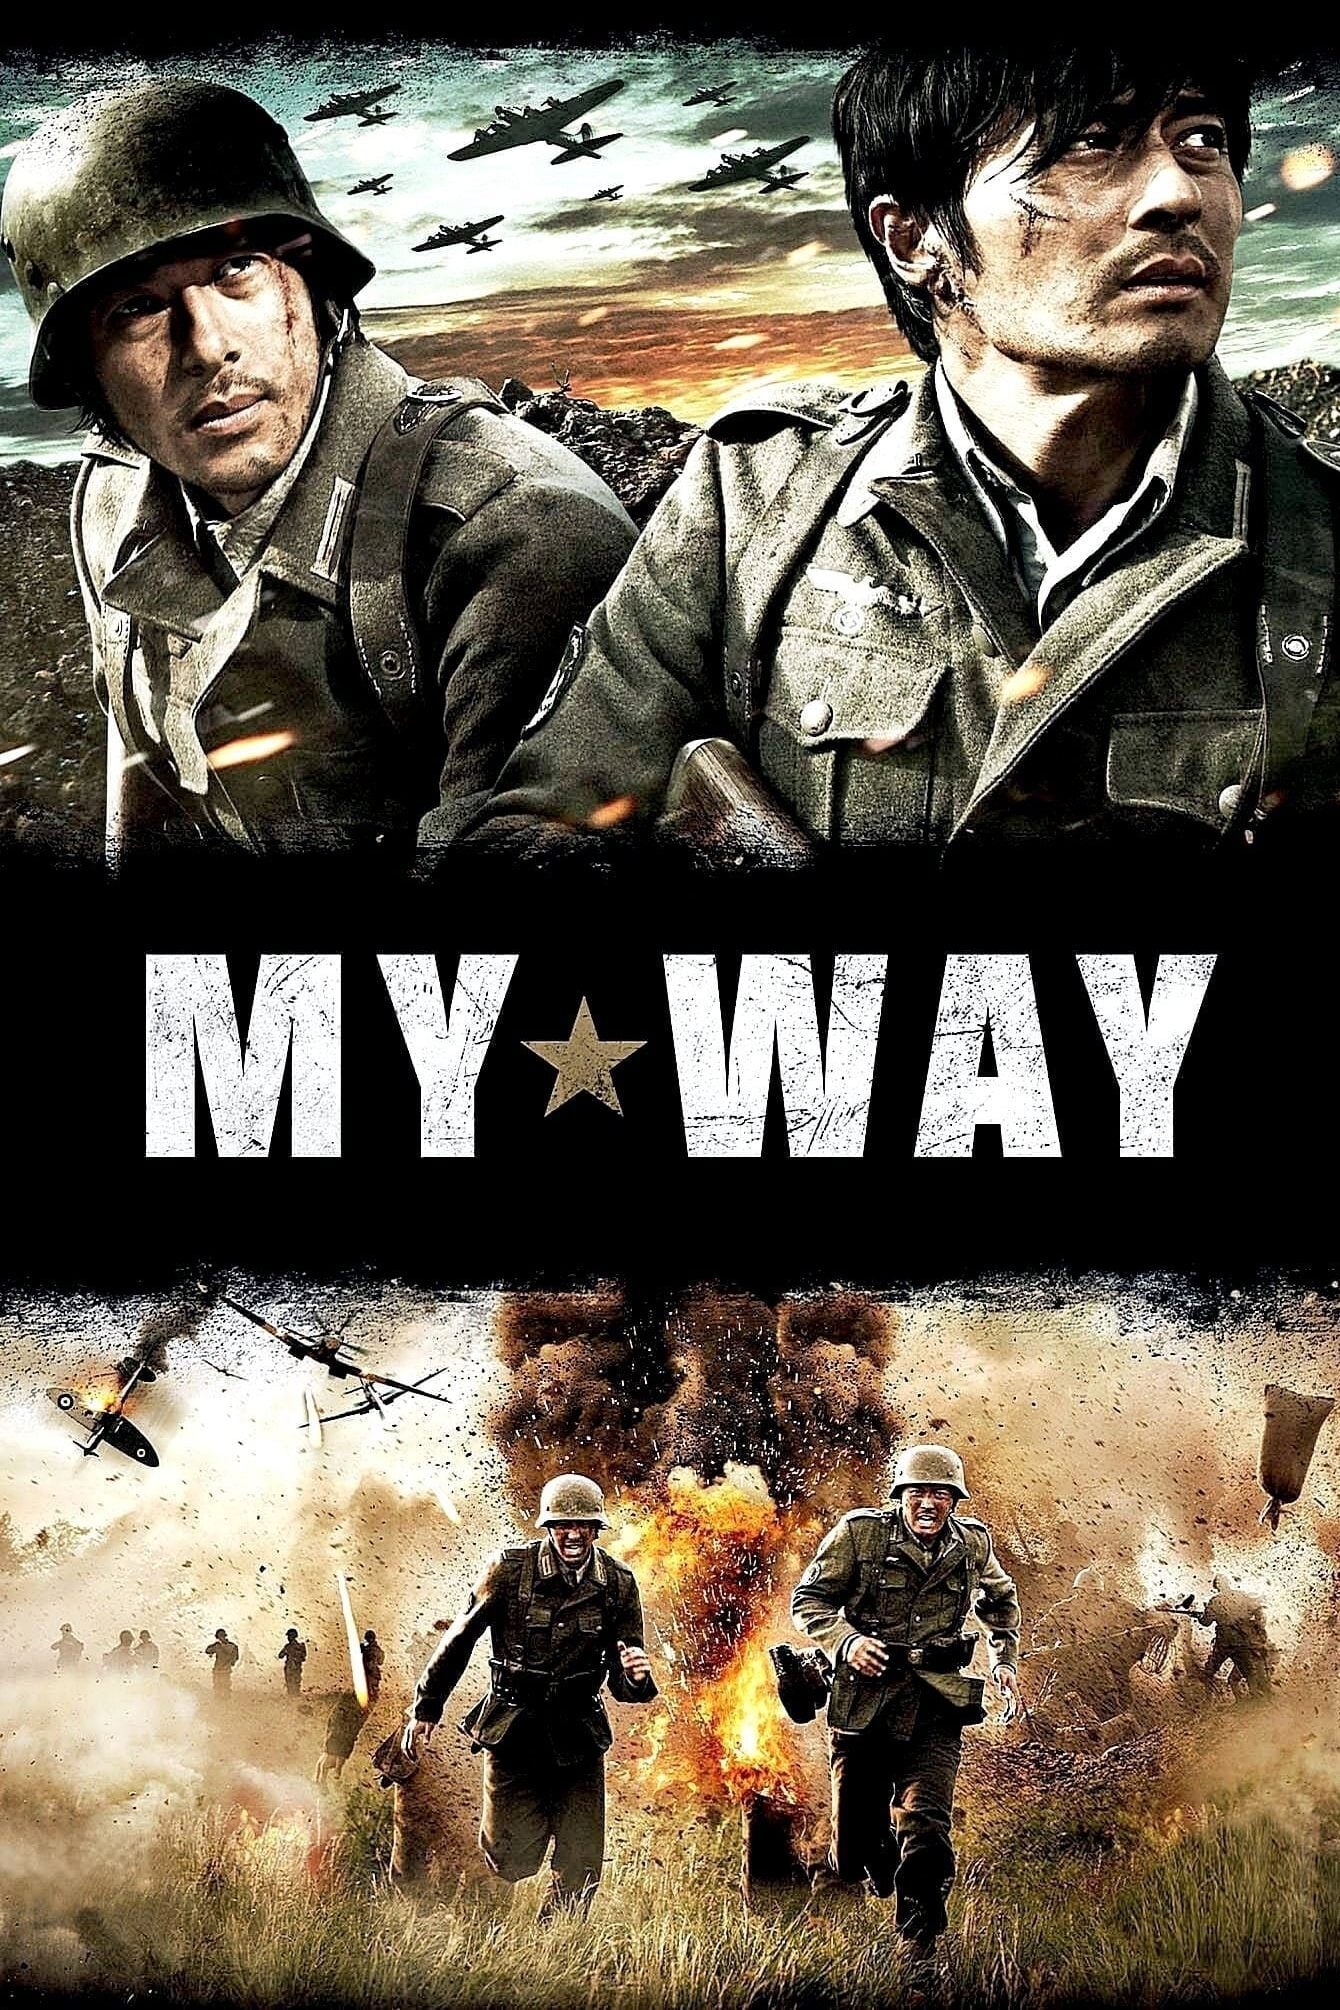 My Way (2011)